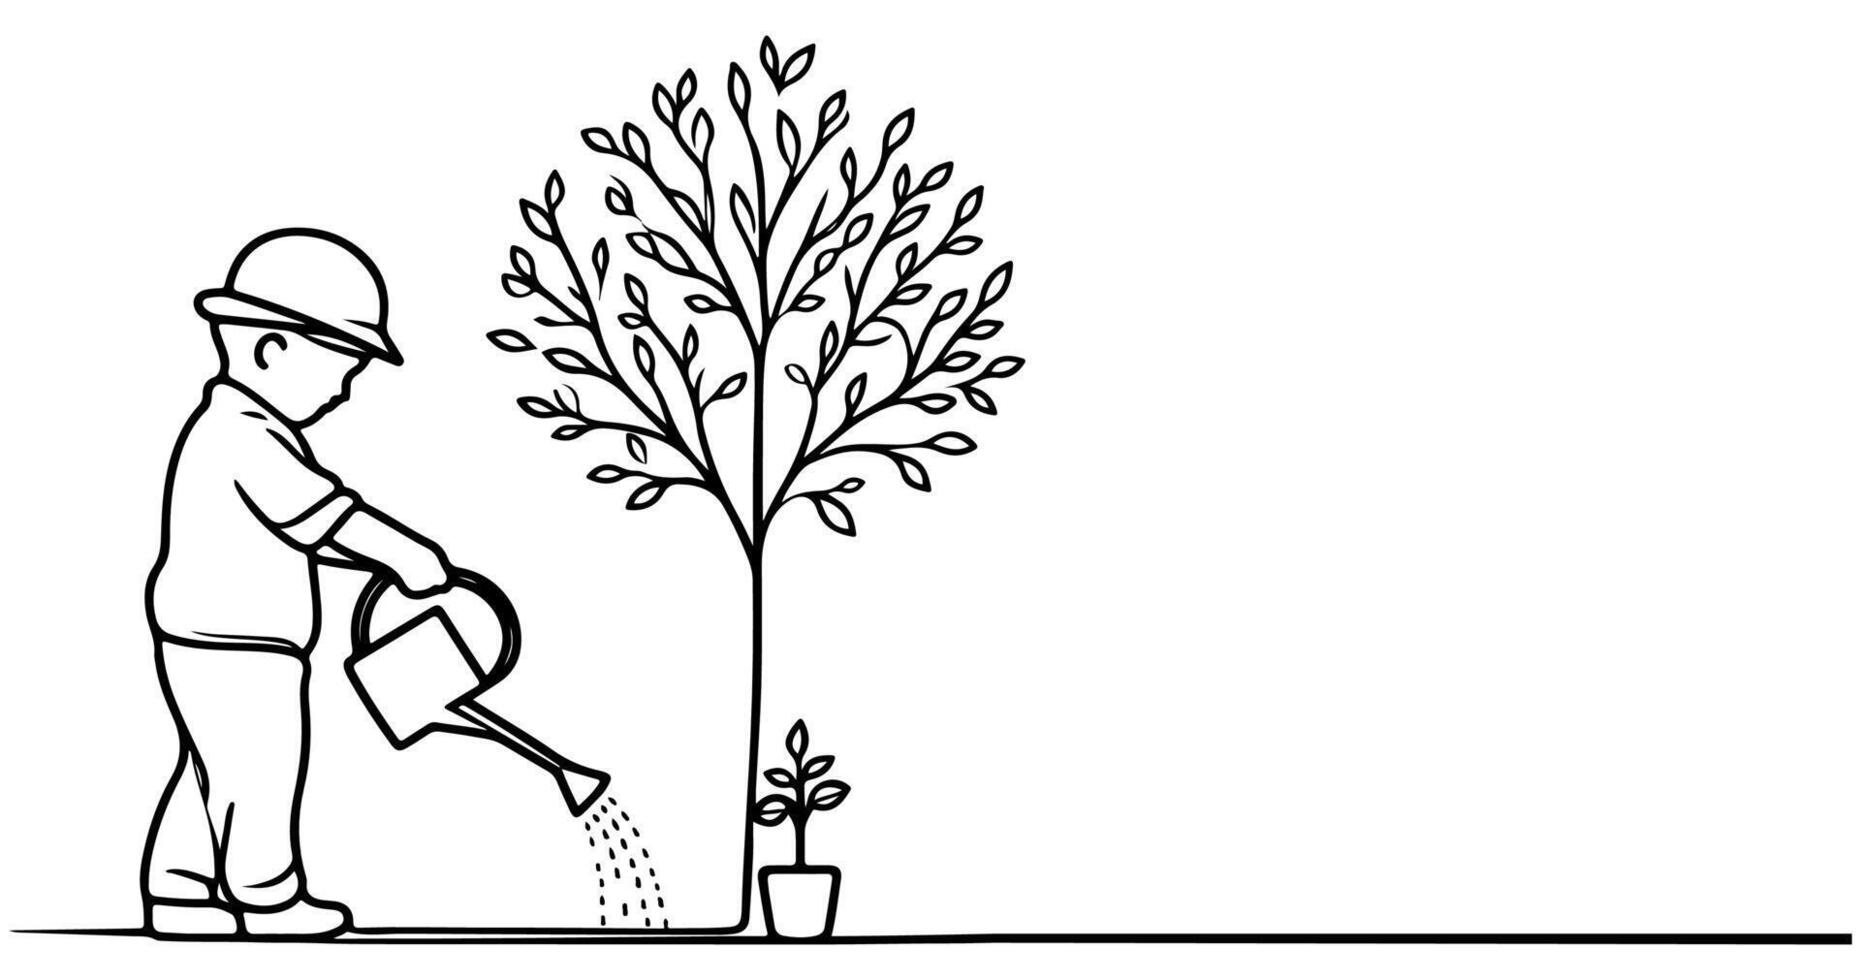 doorlopend een zwart lijn kunst tekening silhouet van kinderen gieter een boom. aanplant boom naar opslaan de wereld en aarde dag verminderen globaal opwarming groei concept vector illustratie Aan wit achtergrond